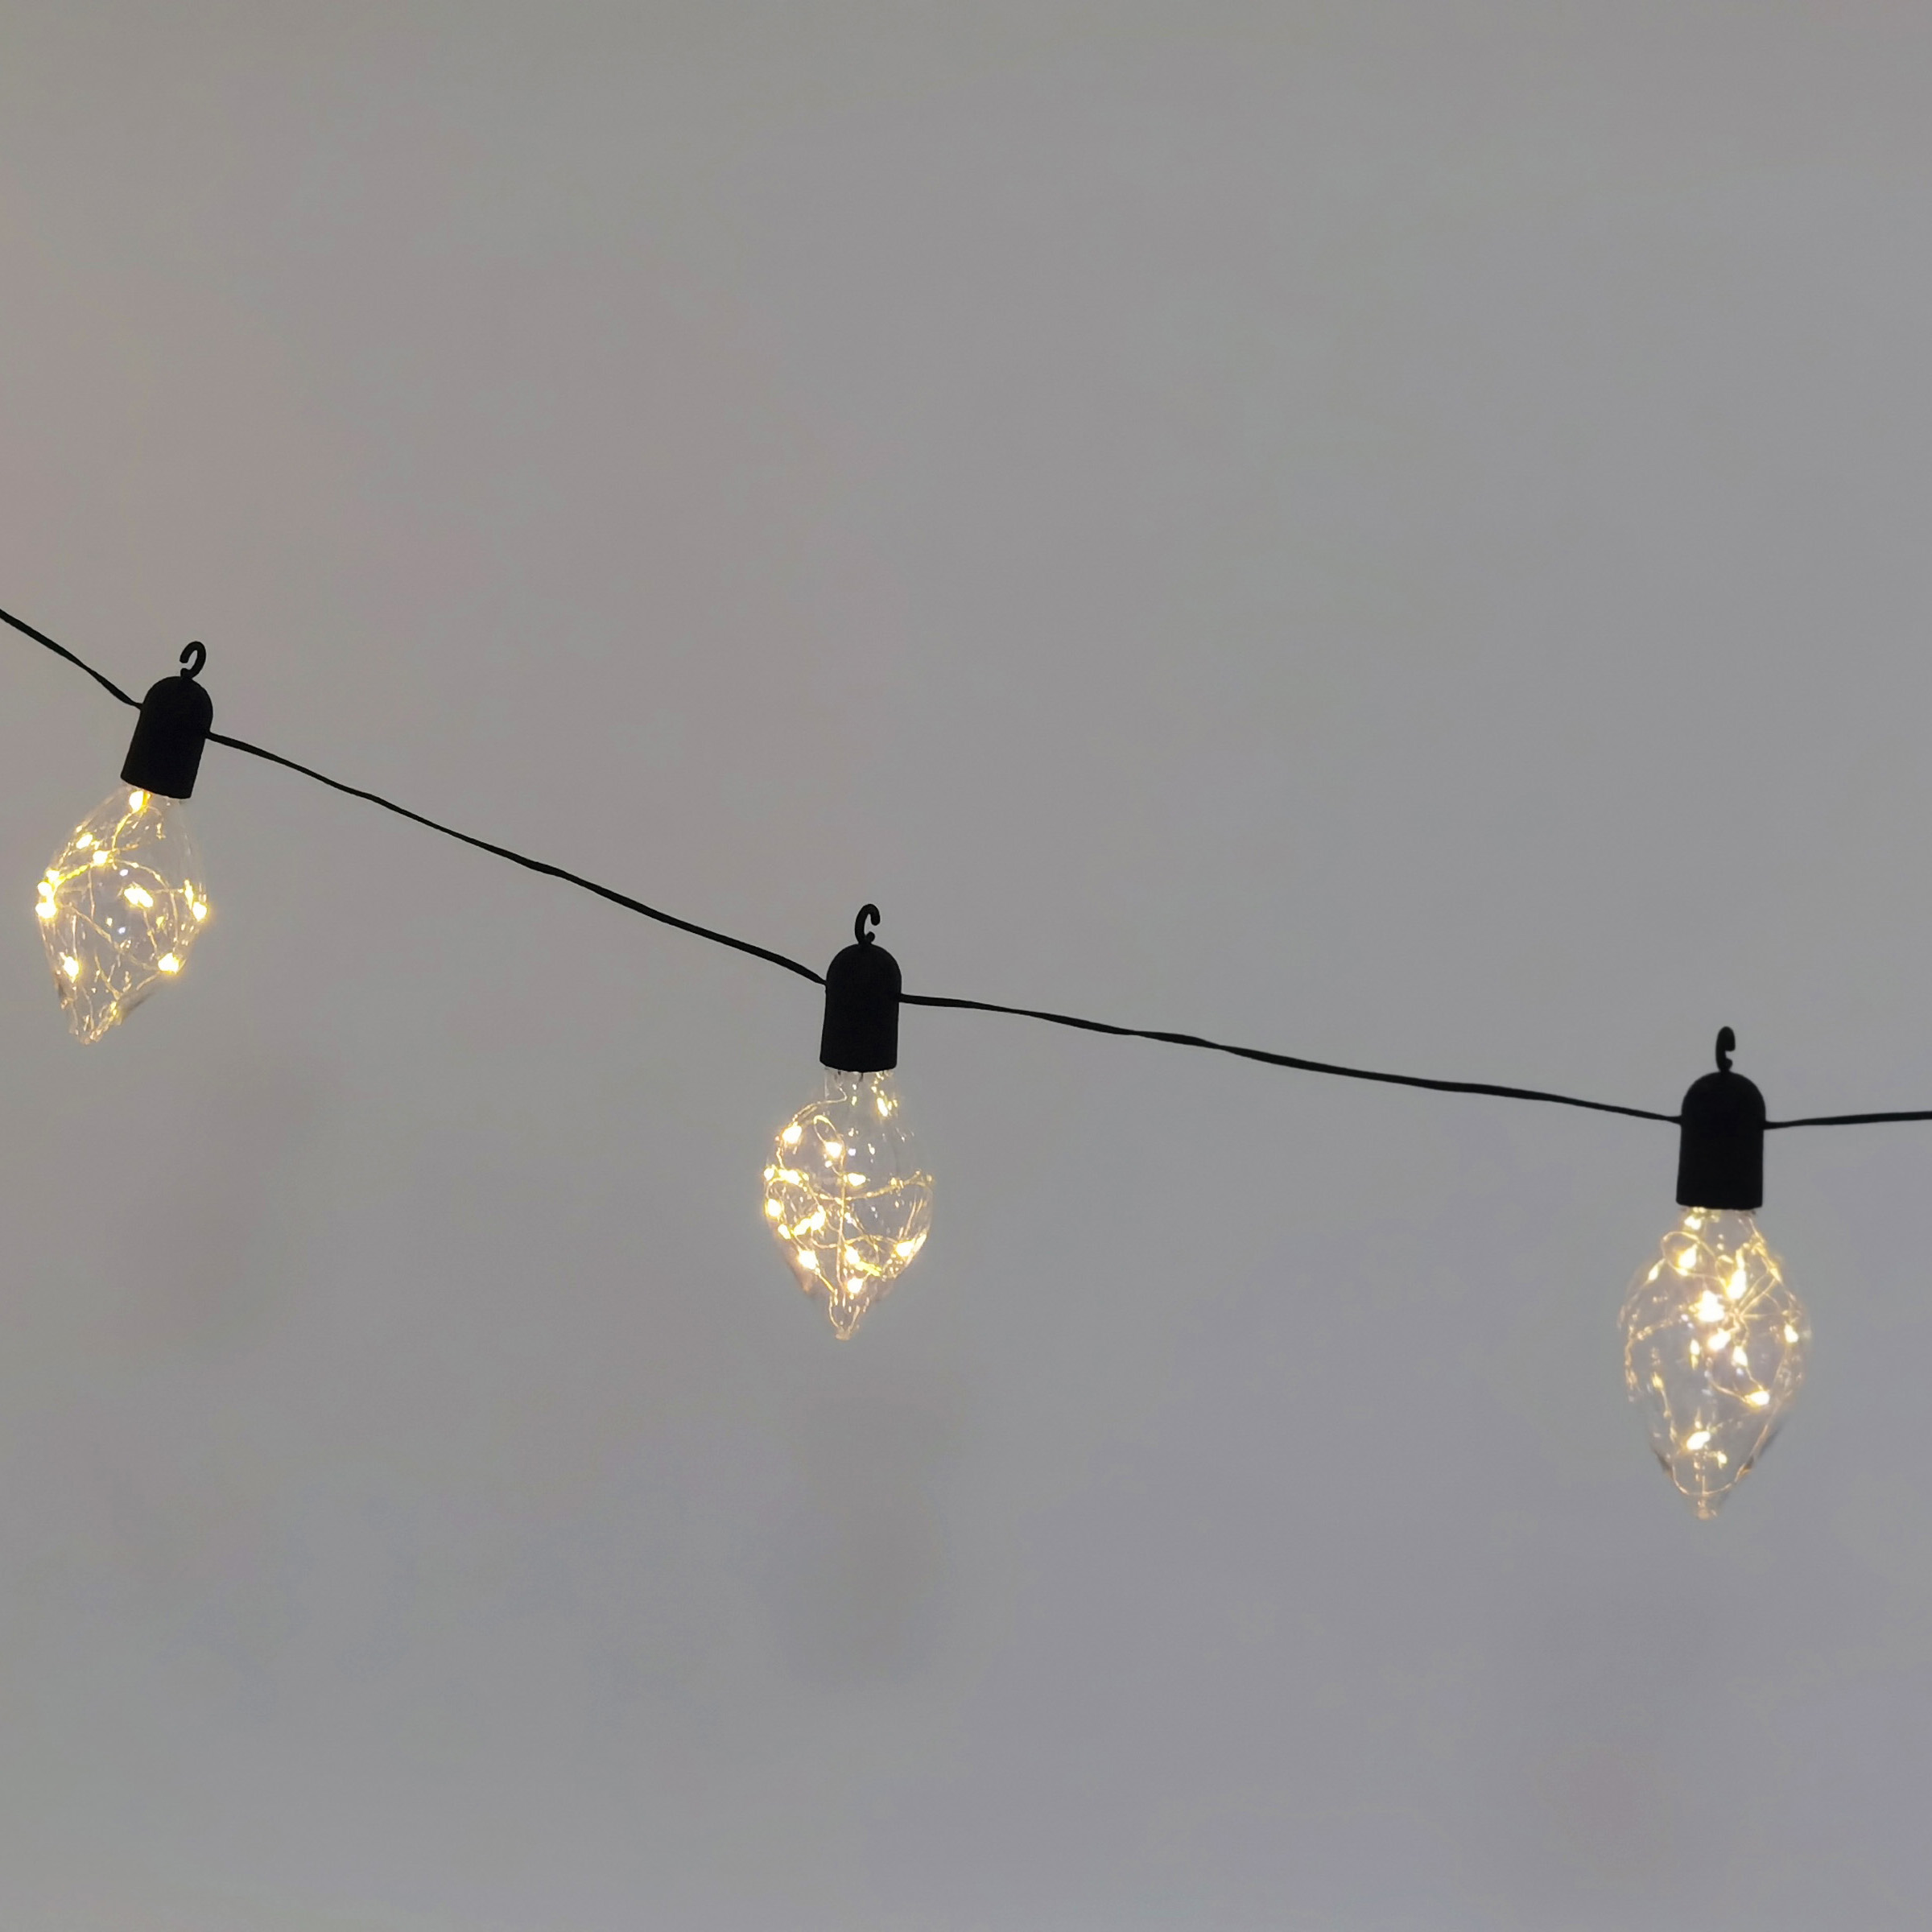 10L economic party light with transparent olive bulb(6.4*12cm)